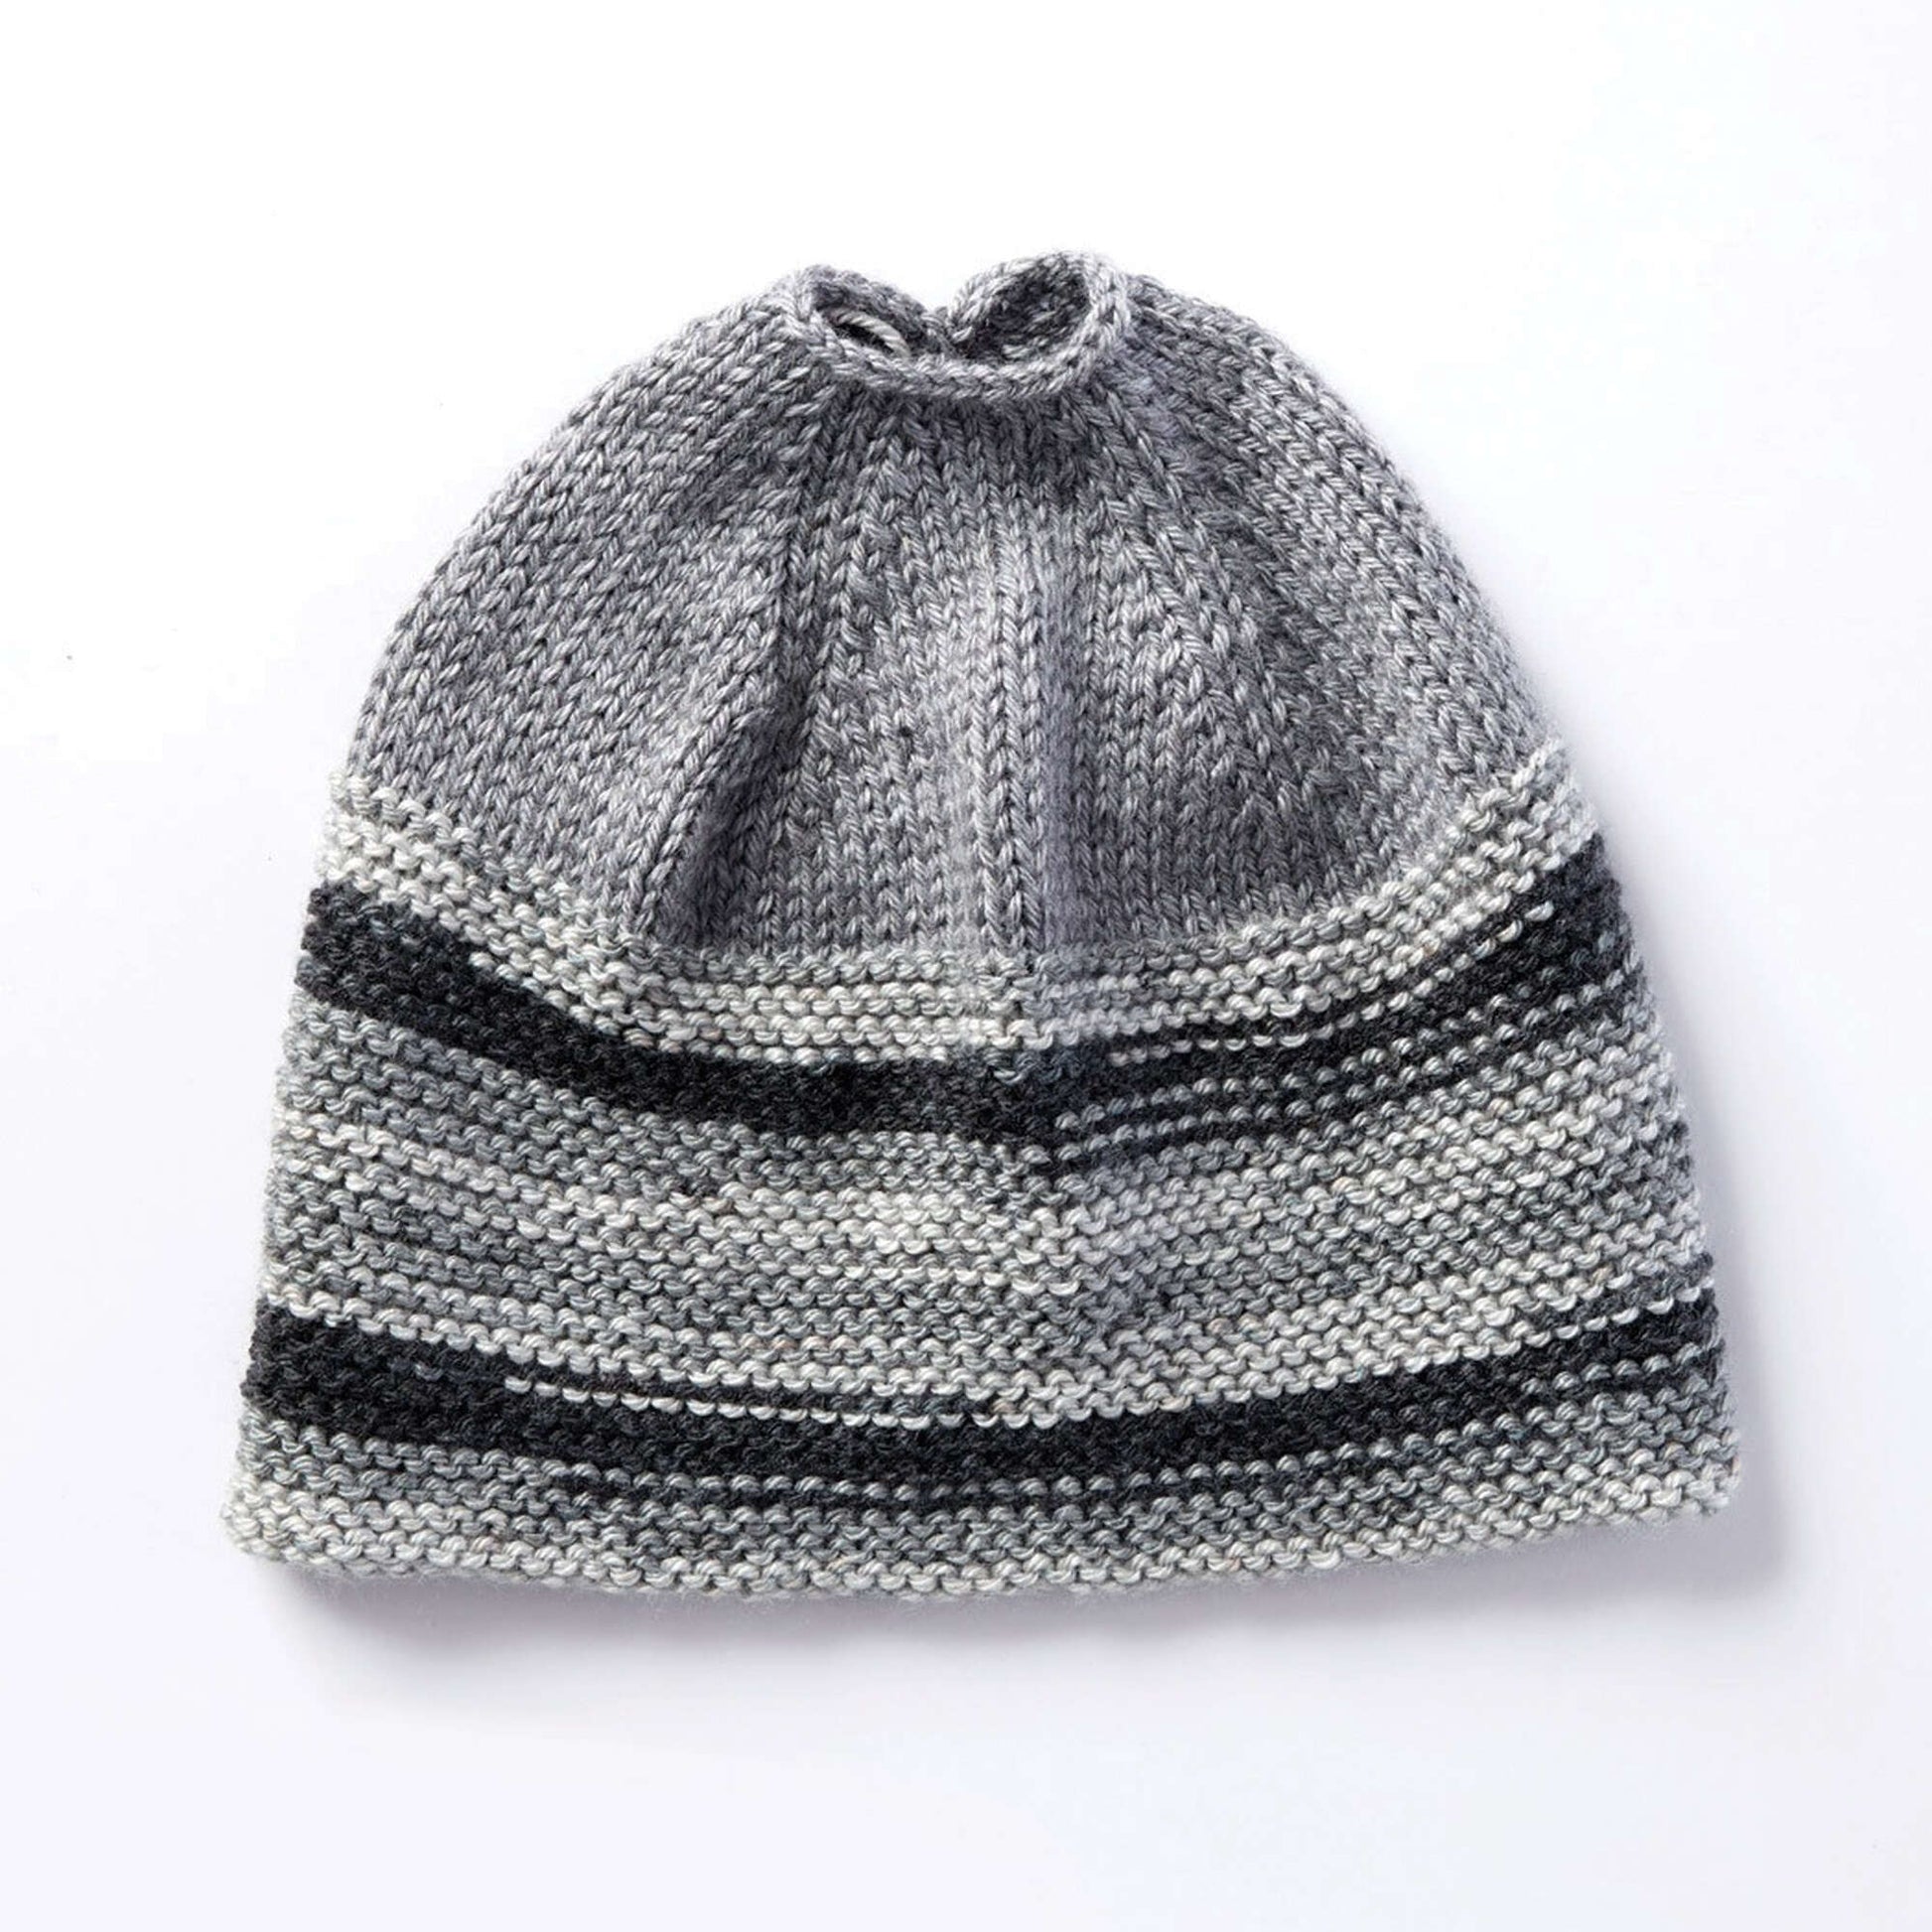 Free Caron Messy Bun Knit Hat Pattern